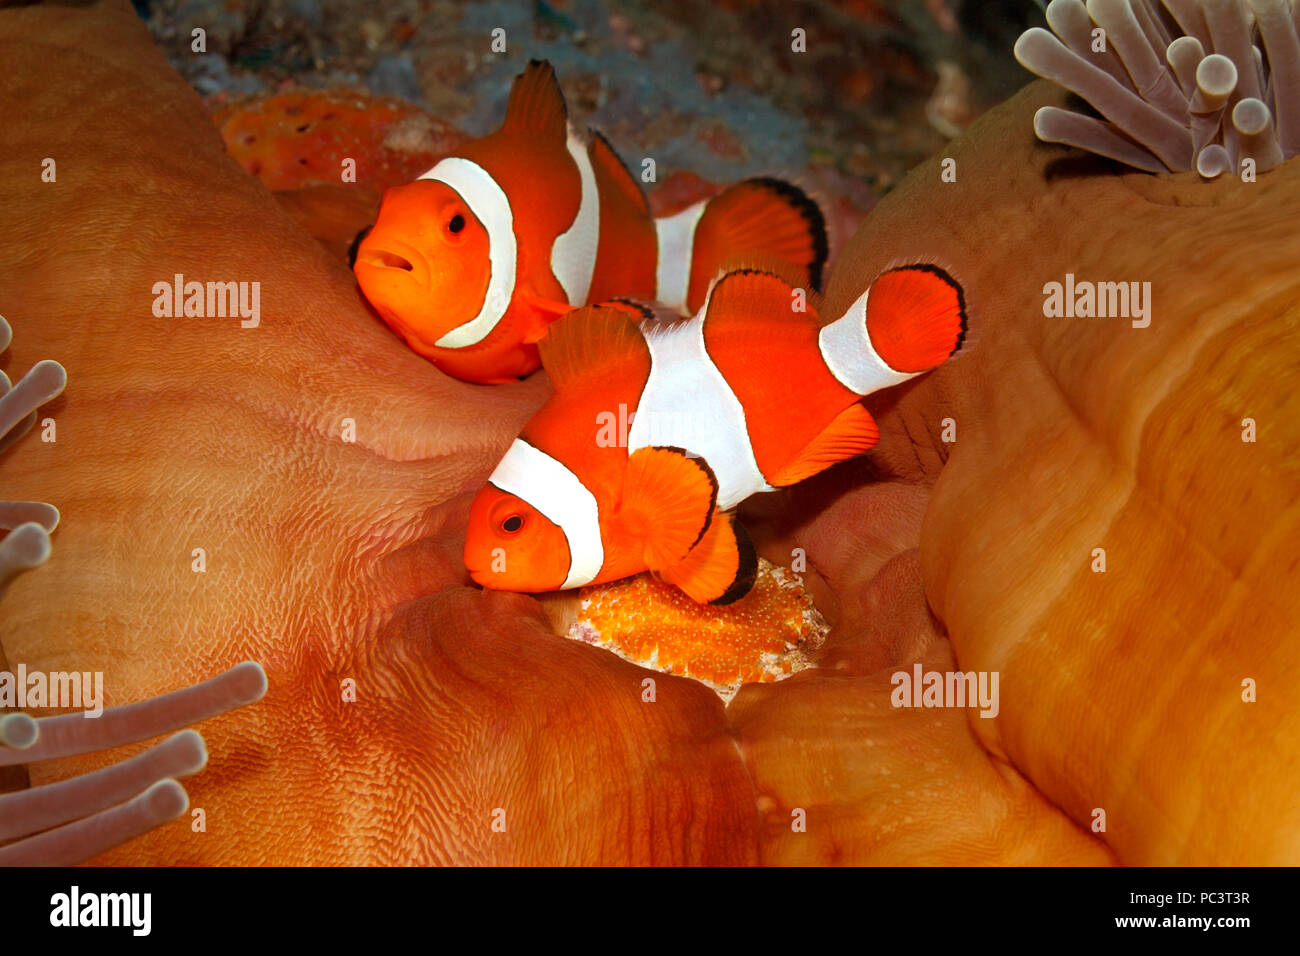 Coppia di anemonefish clown, ocellaris di Amphiprion, uova tendenti posate alla base dell'ospite magnifico Anemone, Heteractis magnifica. Tulamben, Bali. Foto Stock